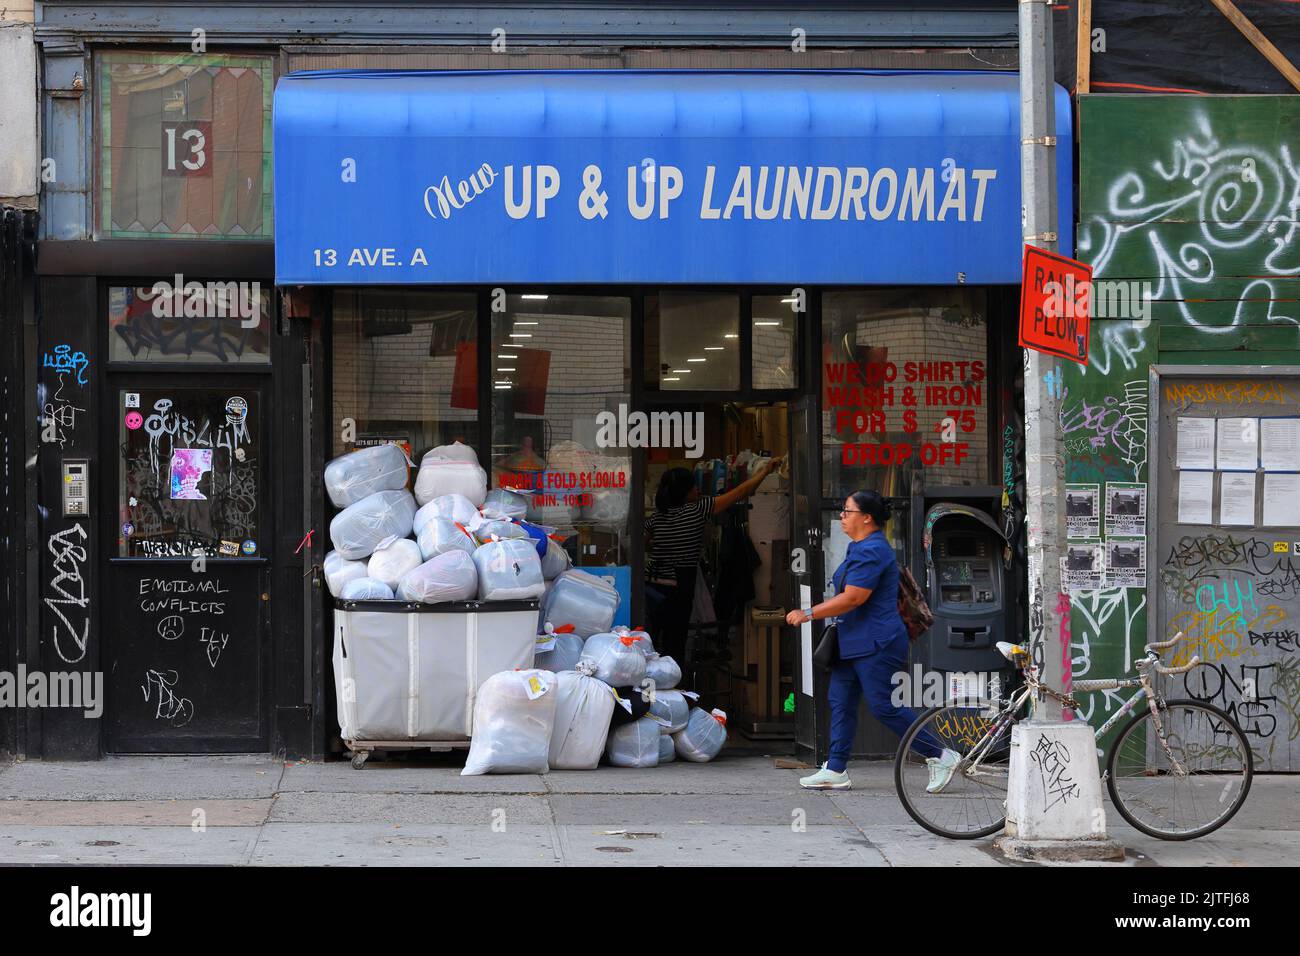 Lavanderia automatica Up & Up, 13 Avenue A, New York, foto di fronte al negozio di New York di una lavanderia automatica nel quartiere East Village di Manhattan. Foto Stock